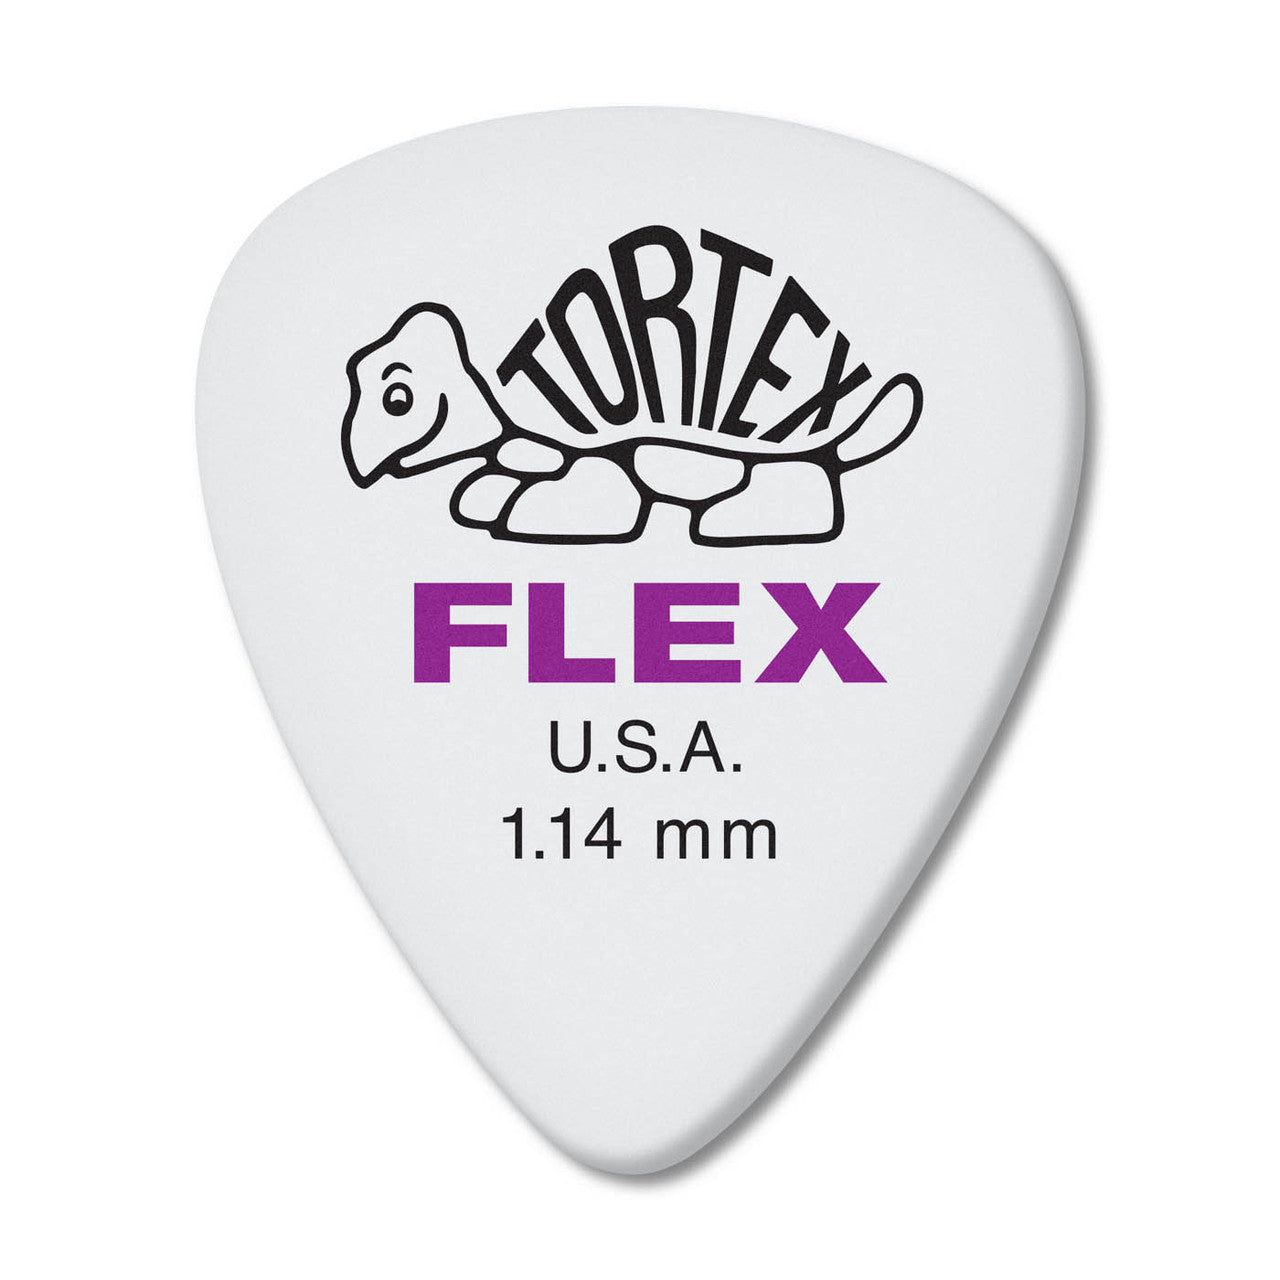 Dunlop 428 Tortex® Flex™ Standard Pick, 1.14MM